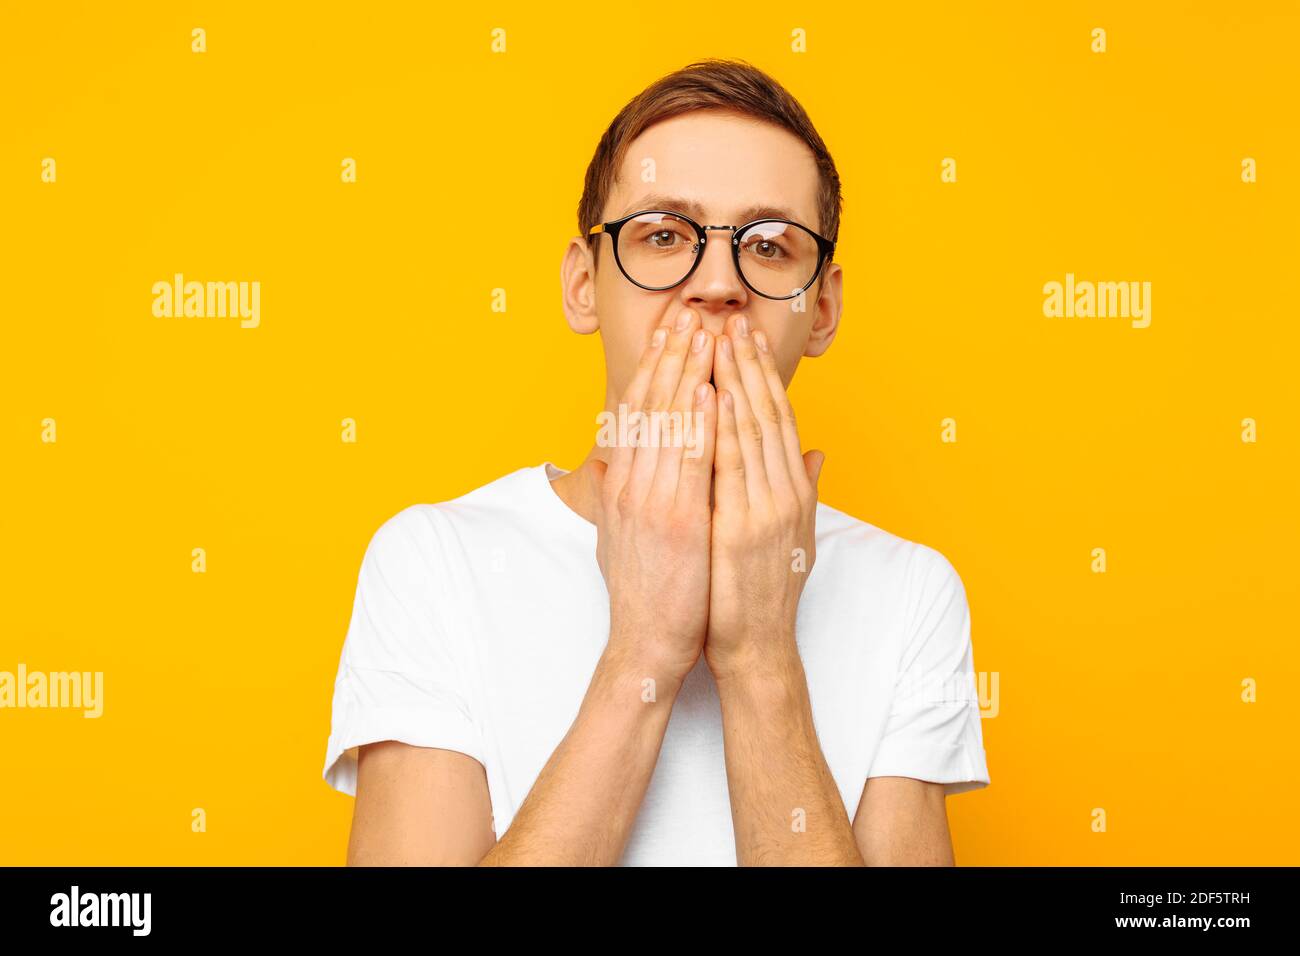 Porträt eines verängstigten Mannes mit Brille, eines Mannes, der in einem weißen T-Shirt gekleidet ist und vor Angst seinen Mund mit den Händen bedeckt, auf einem gelben Hintergrund Stockfoto